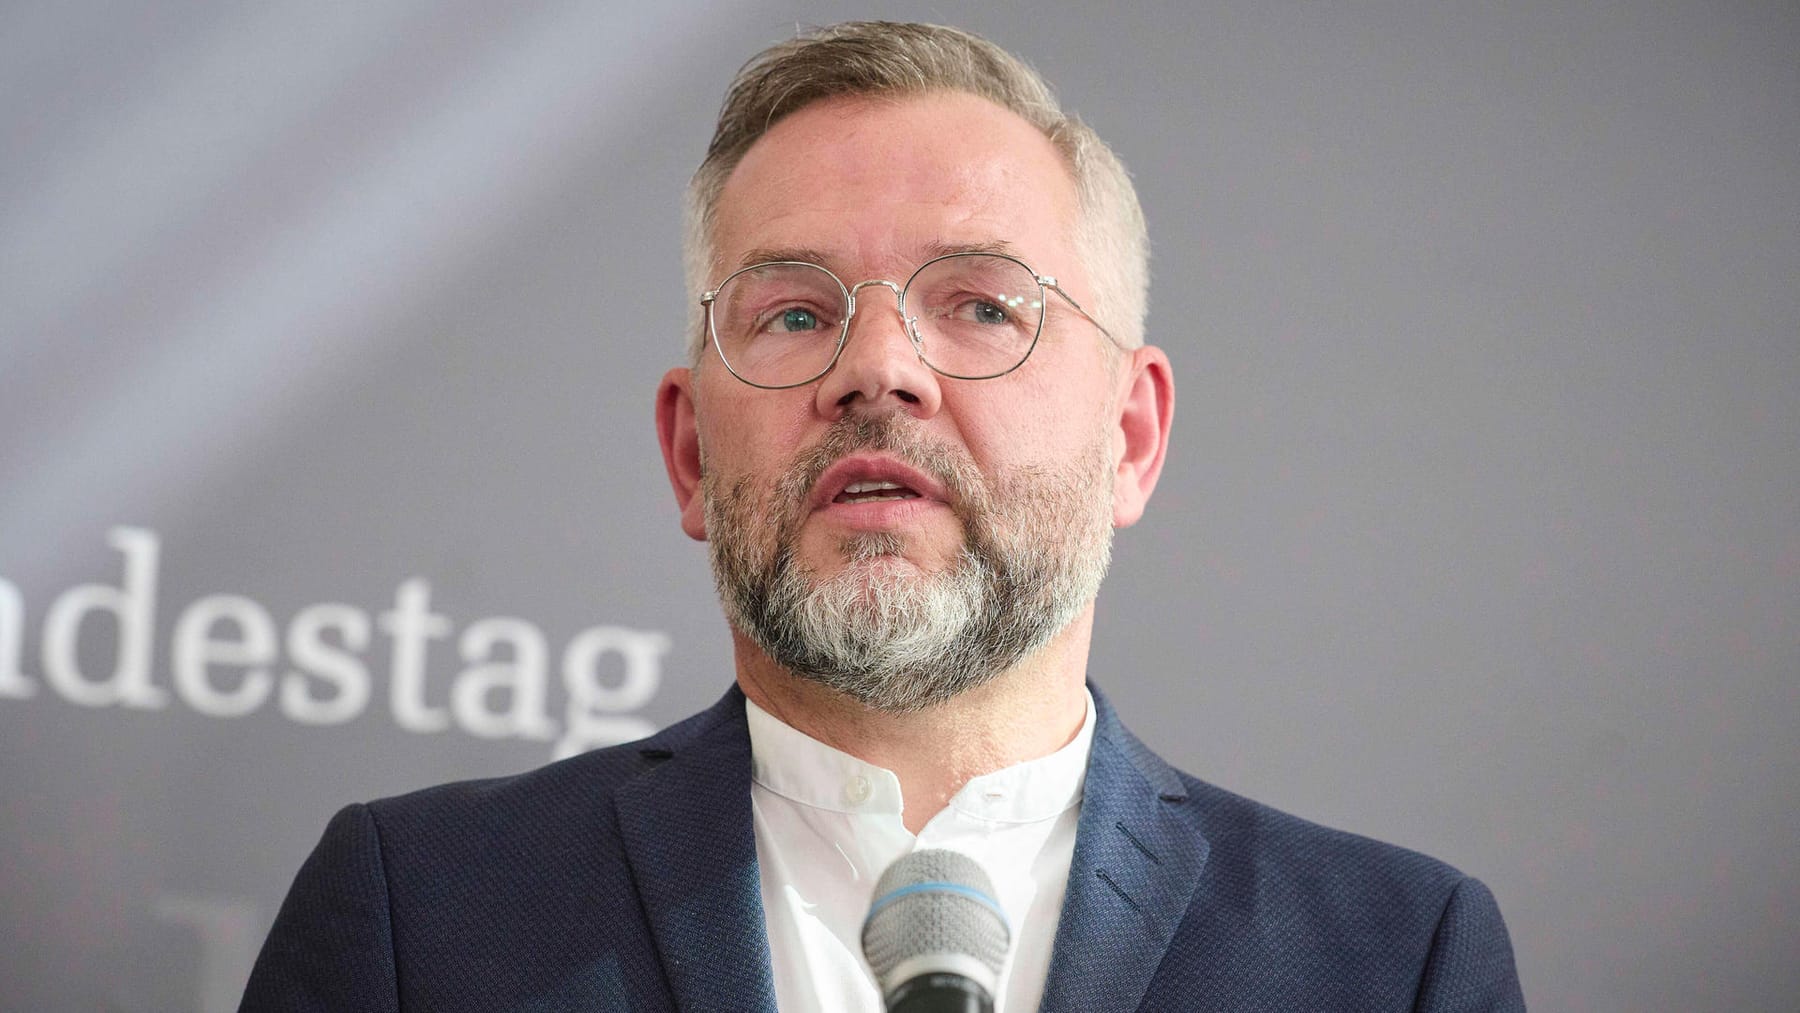 Le politicien du SPD Michael Roth fait une pause – « J’avais peur de l’échec »